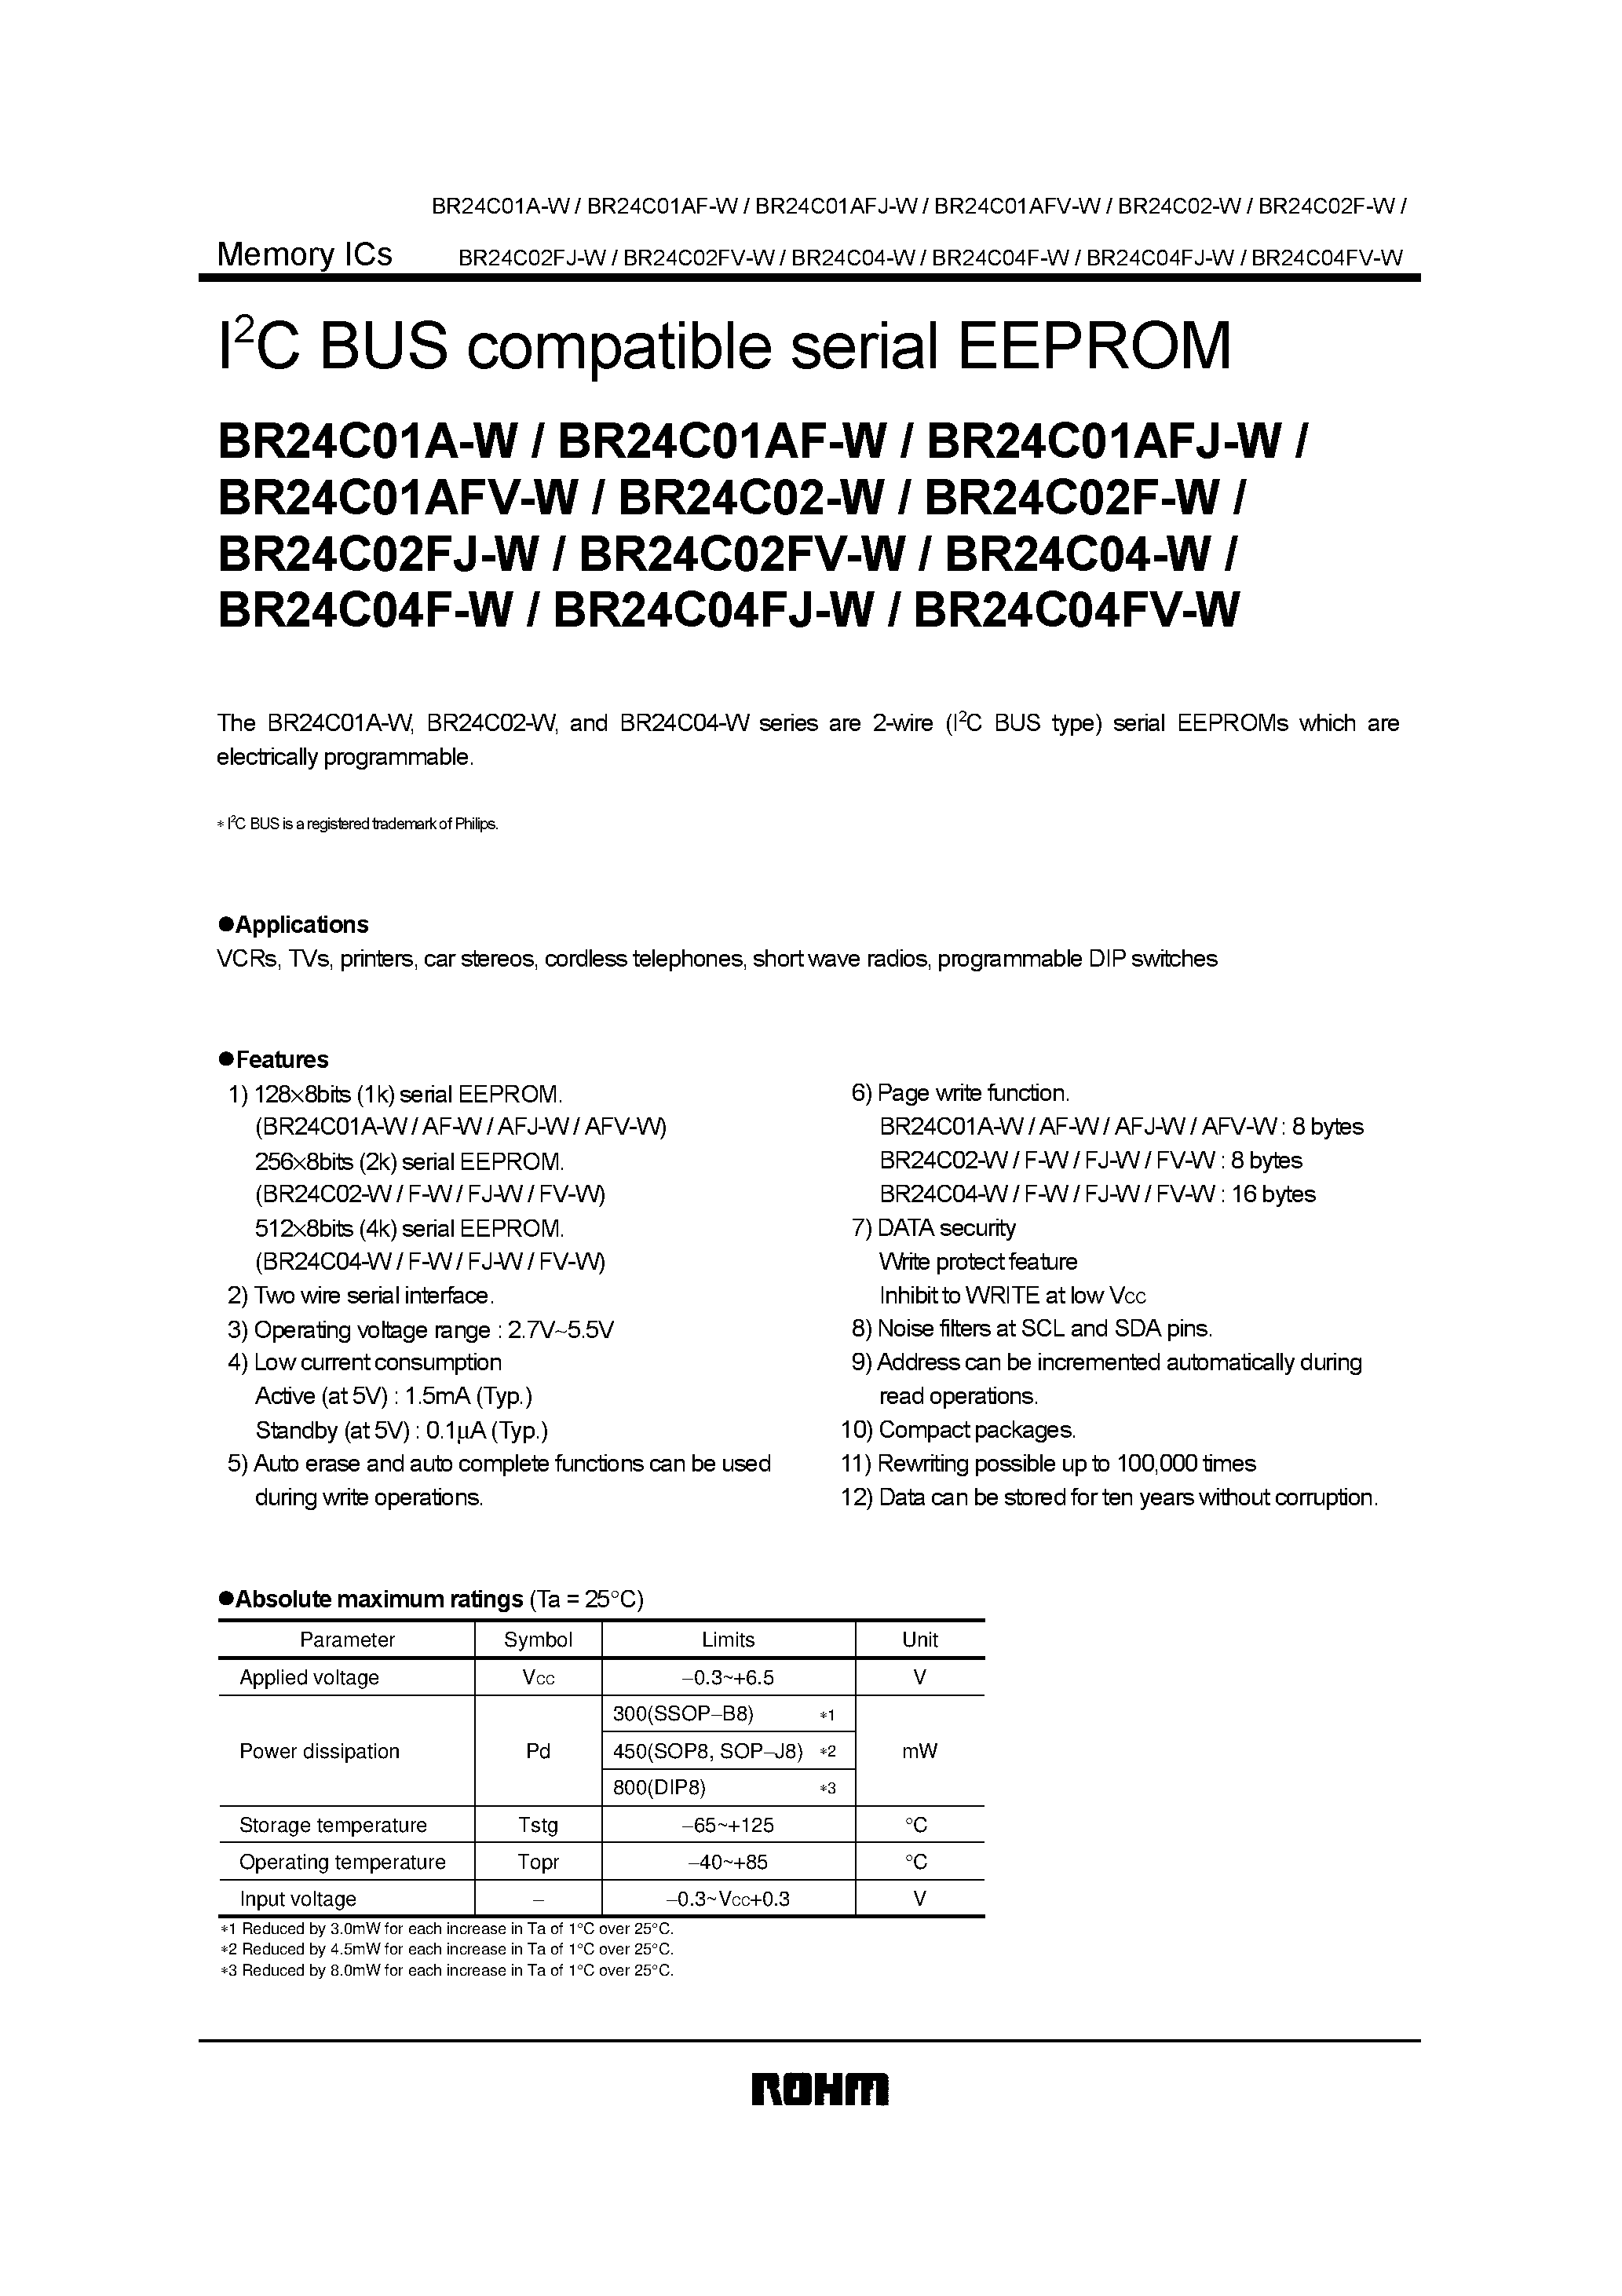 Даташит BR24C02FJ-W - I2C BUS compatible serial EEPROM страница 1